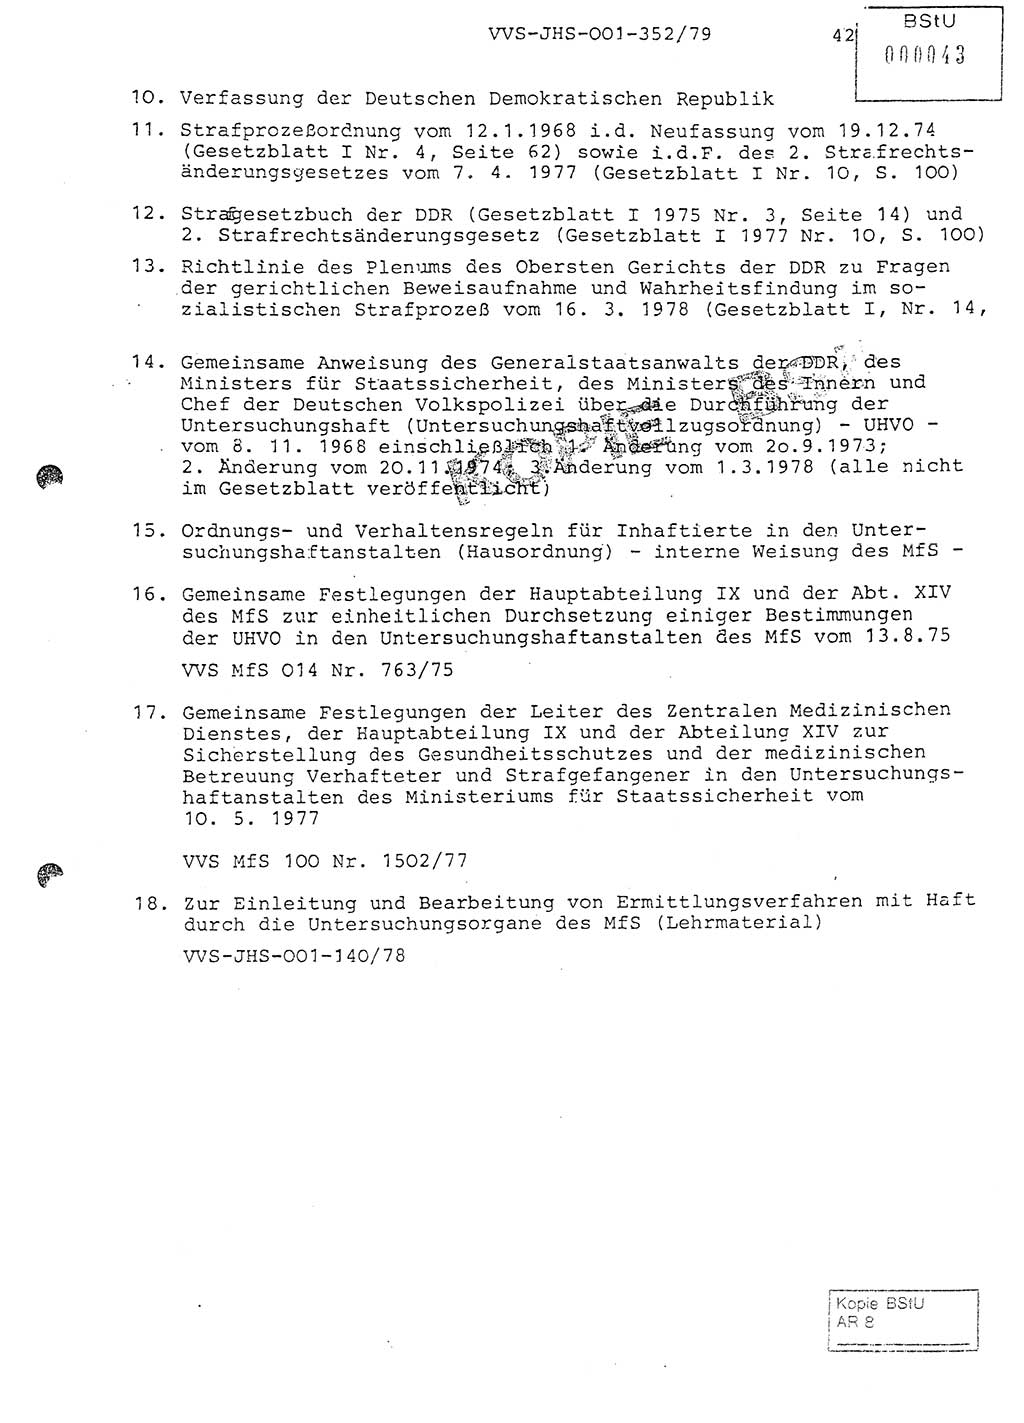 Diplomarbeit Hauptmann Peter Wittum (BV Bln. Abt. HA Ⅸ), Ministerium für Staatssicherheit (MfS) [Deutsche Demokratische Republik (DDR)], Juristische Hochschule (JHS), Vertrauliche Verschlußsache (VVS) o001-352/79, Potsdam 1979, Seite 41 (Dipl.-Arb. MfS DDR JHS VVS o001-352/79 1979, S. 41)